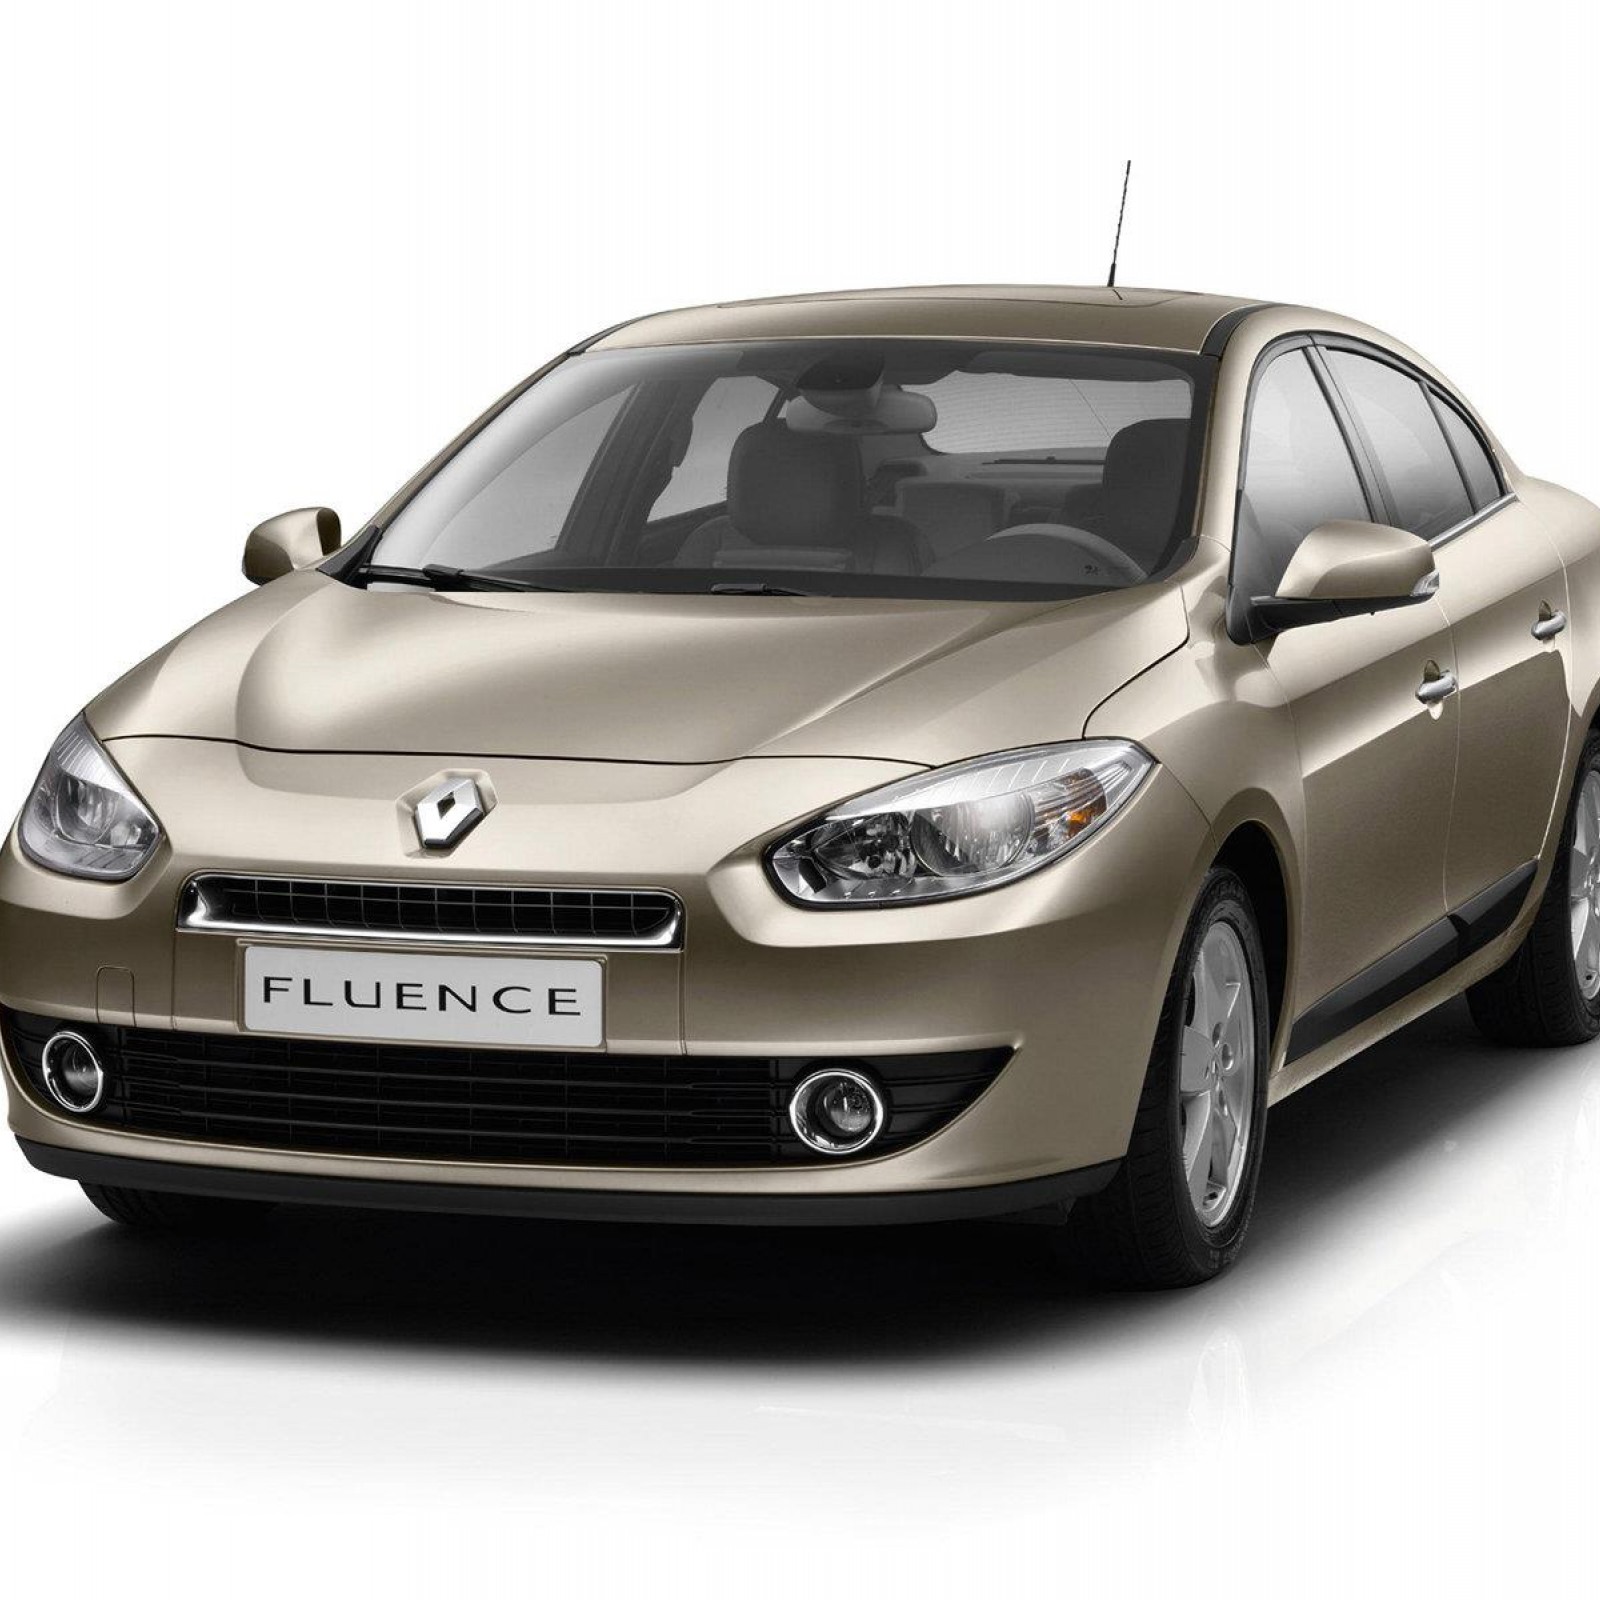 От нового Renault Fluence пахнет паленой пластмассой